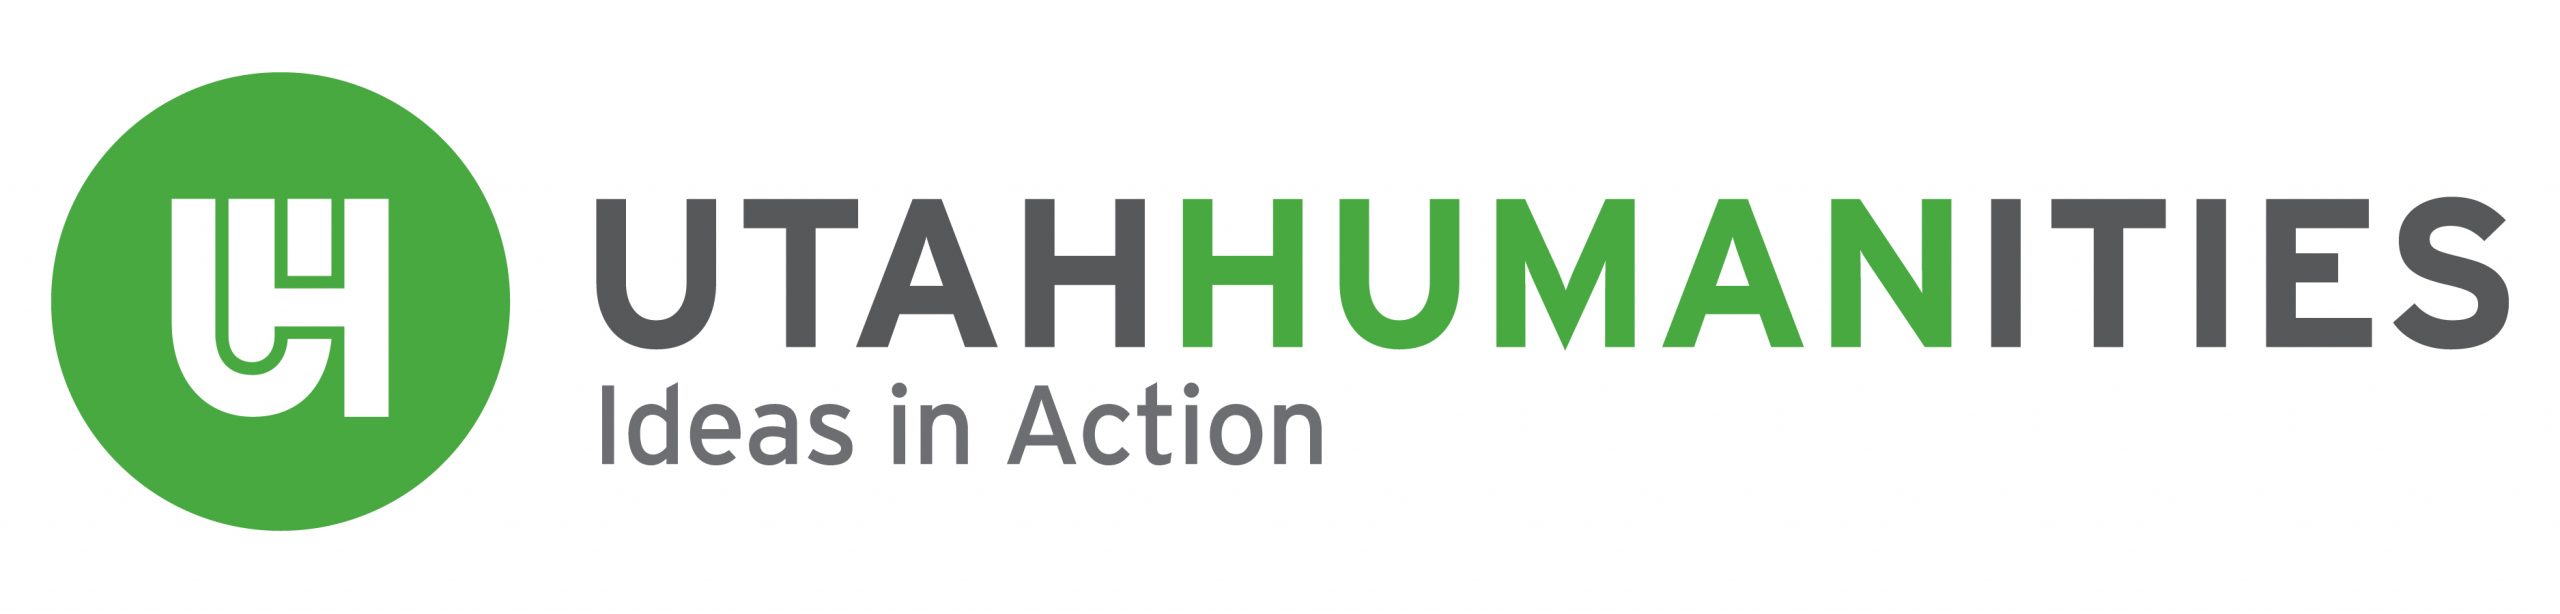 Utah Humanities Logo